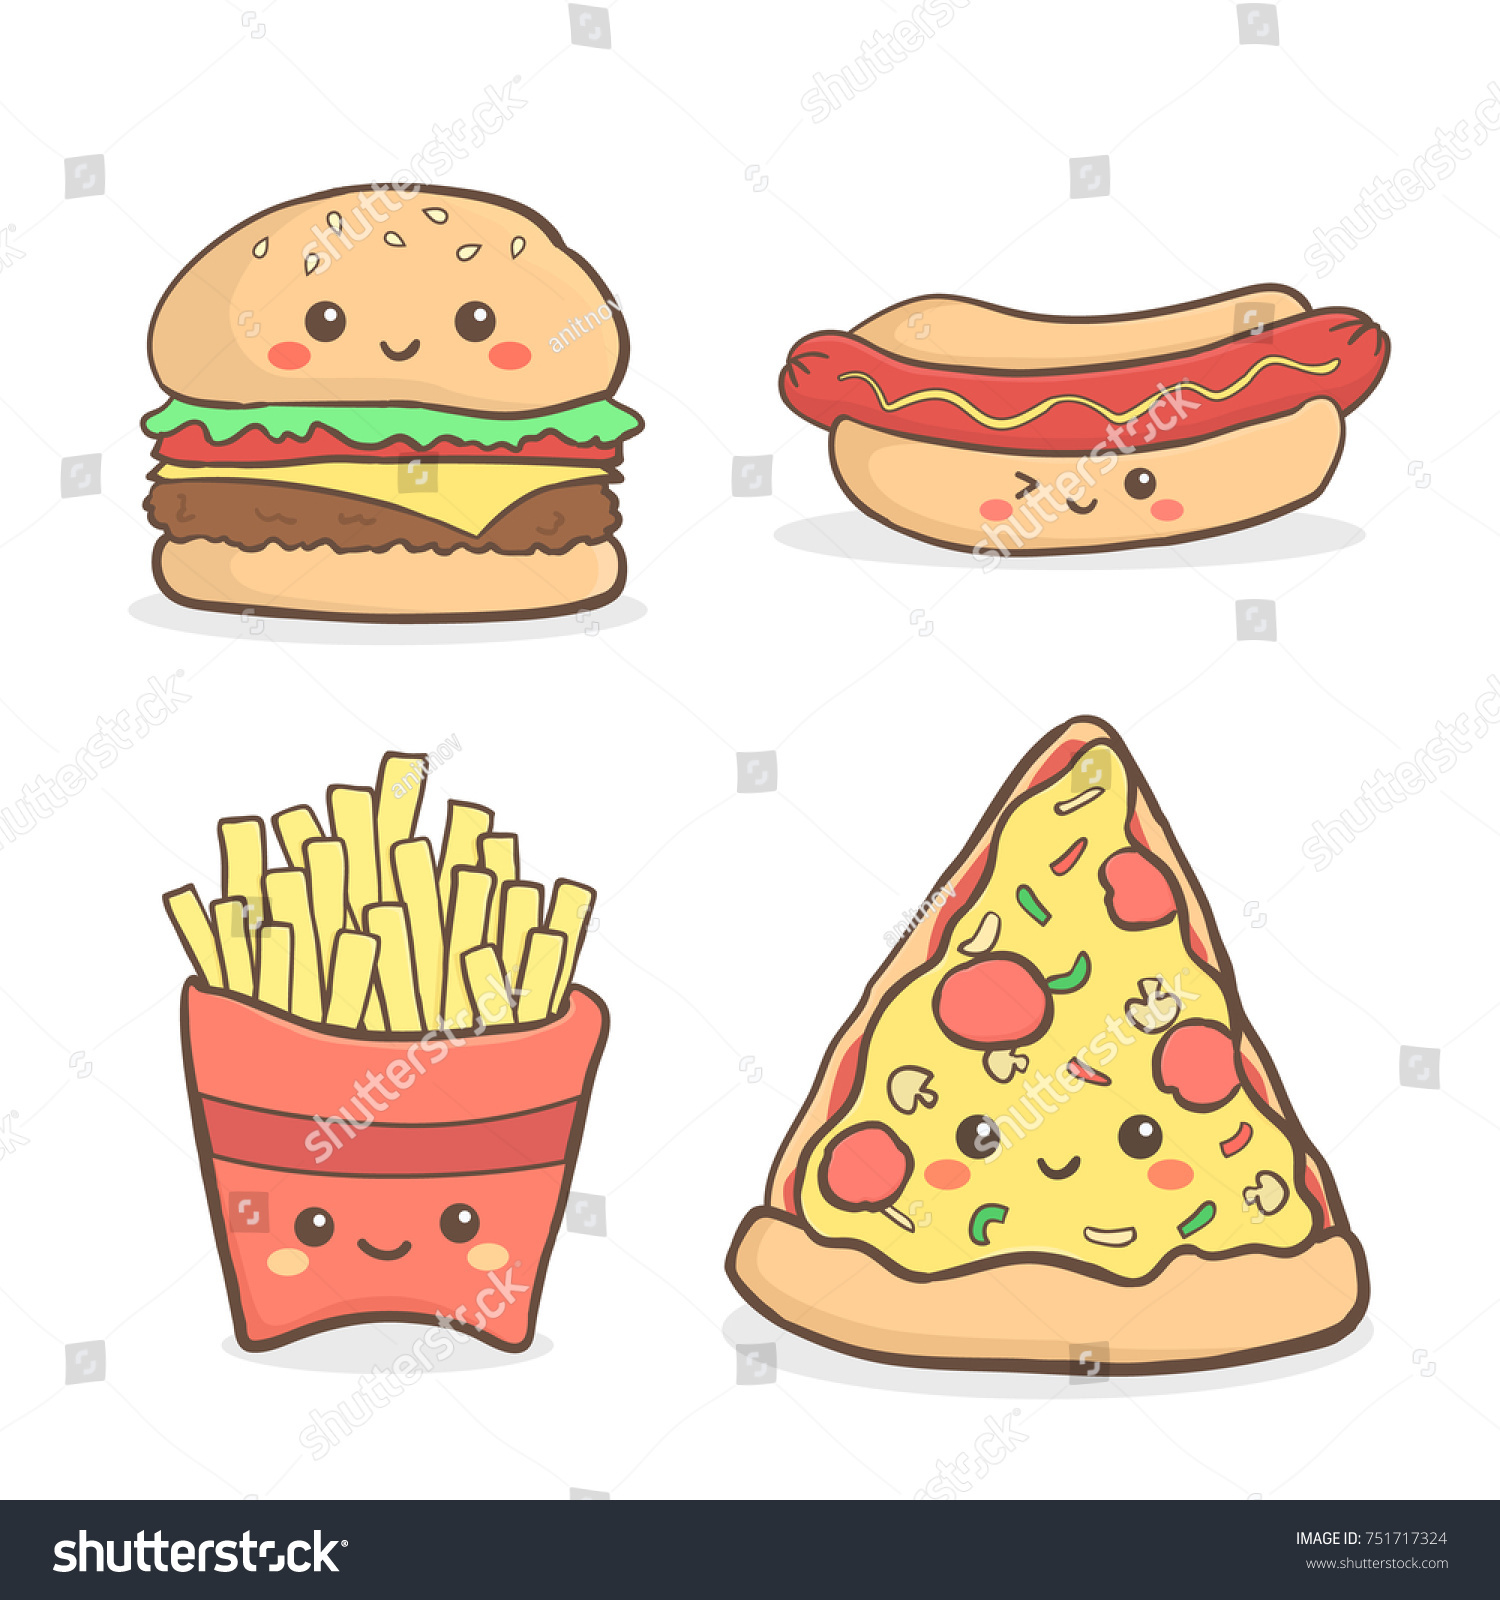 かわいいjunkfood Fastfoodの漫画セットベクターイラスト漫画 ピザ ハンバーガー ハンバーガー フライドポテト ホットドッグ のベクター画像素材 ロイヤリティフリー